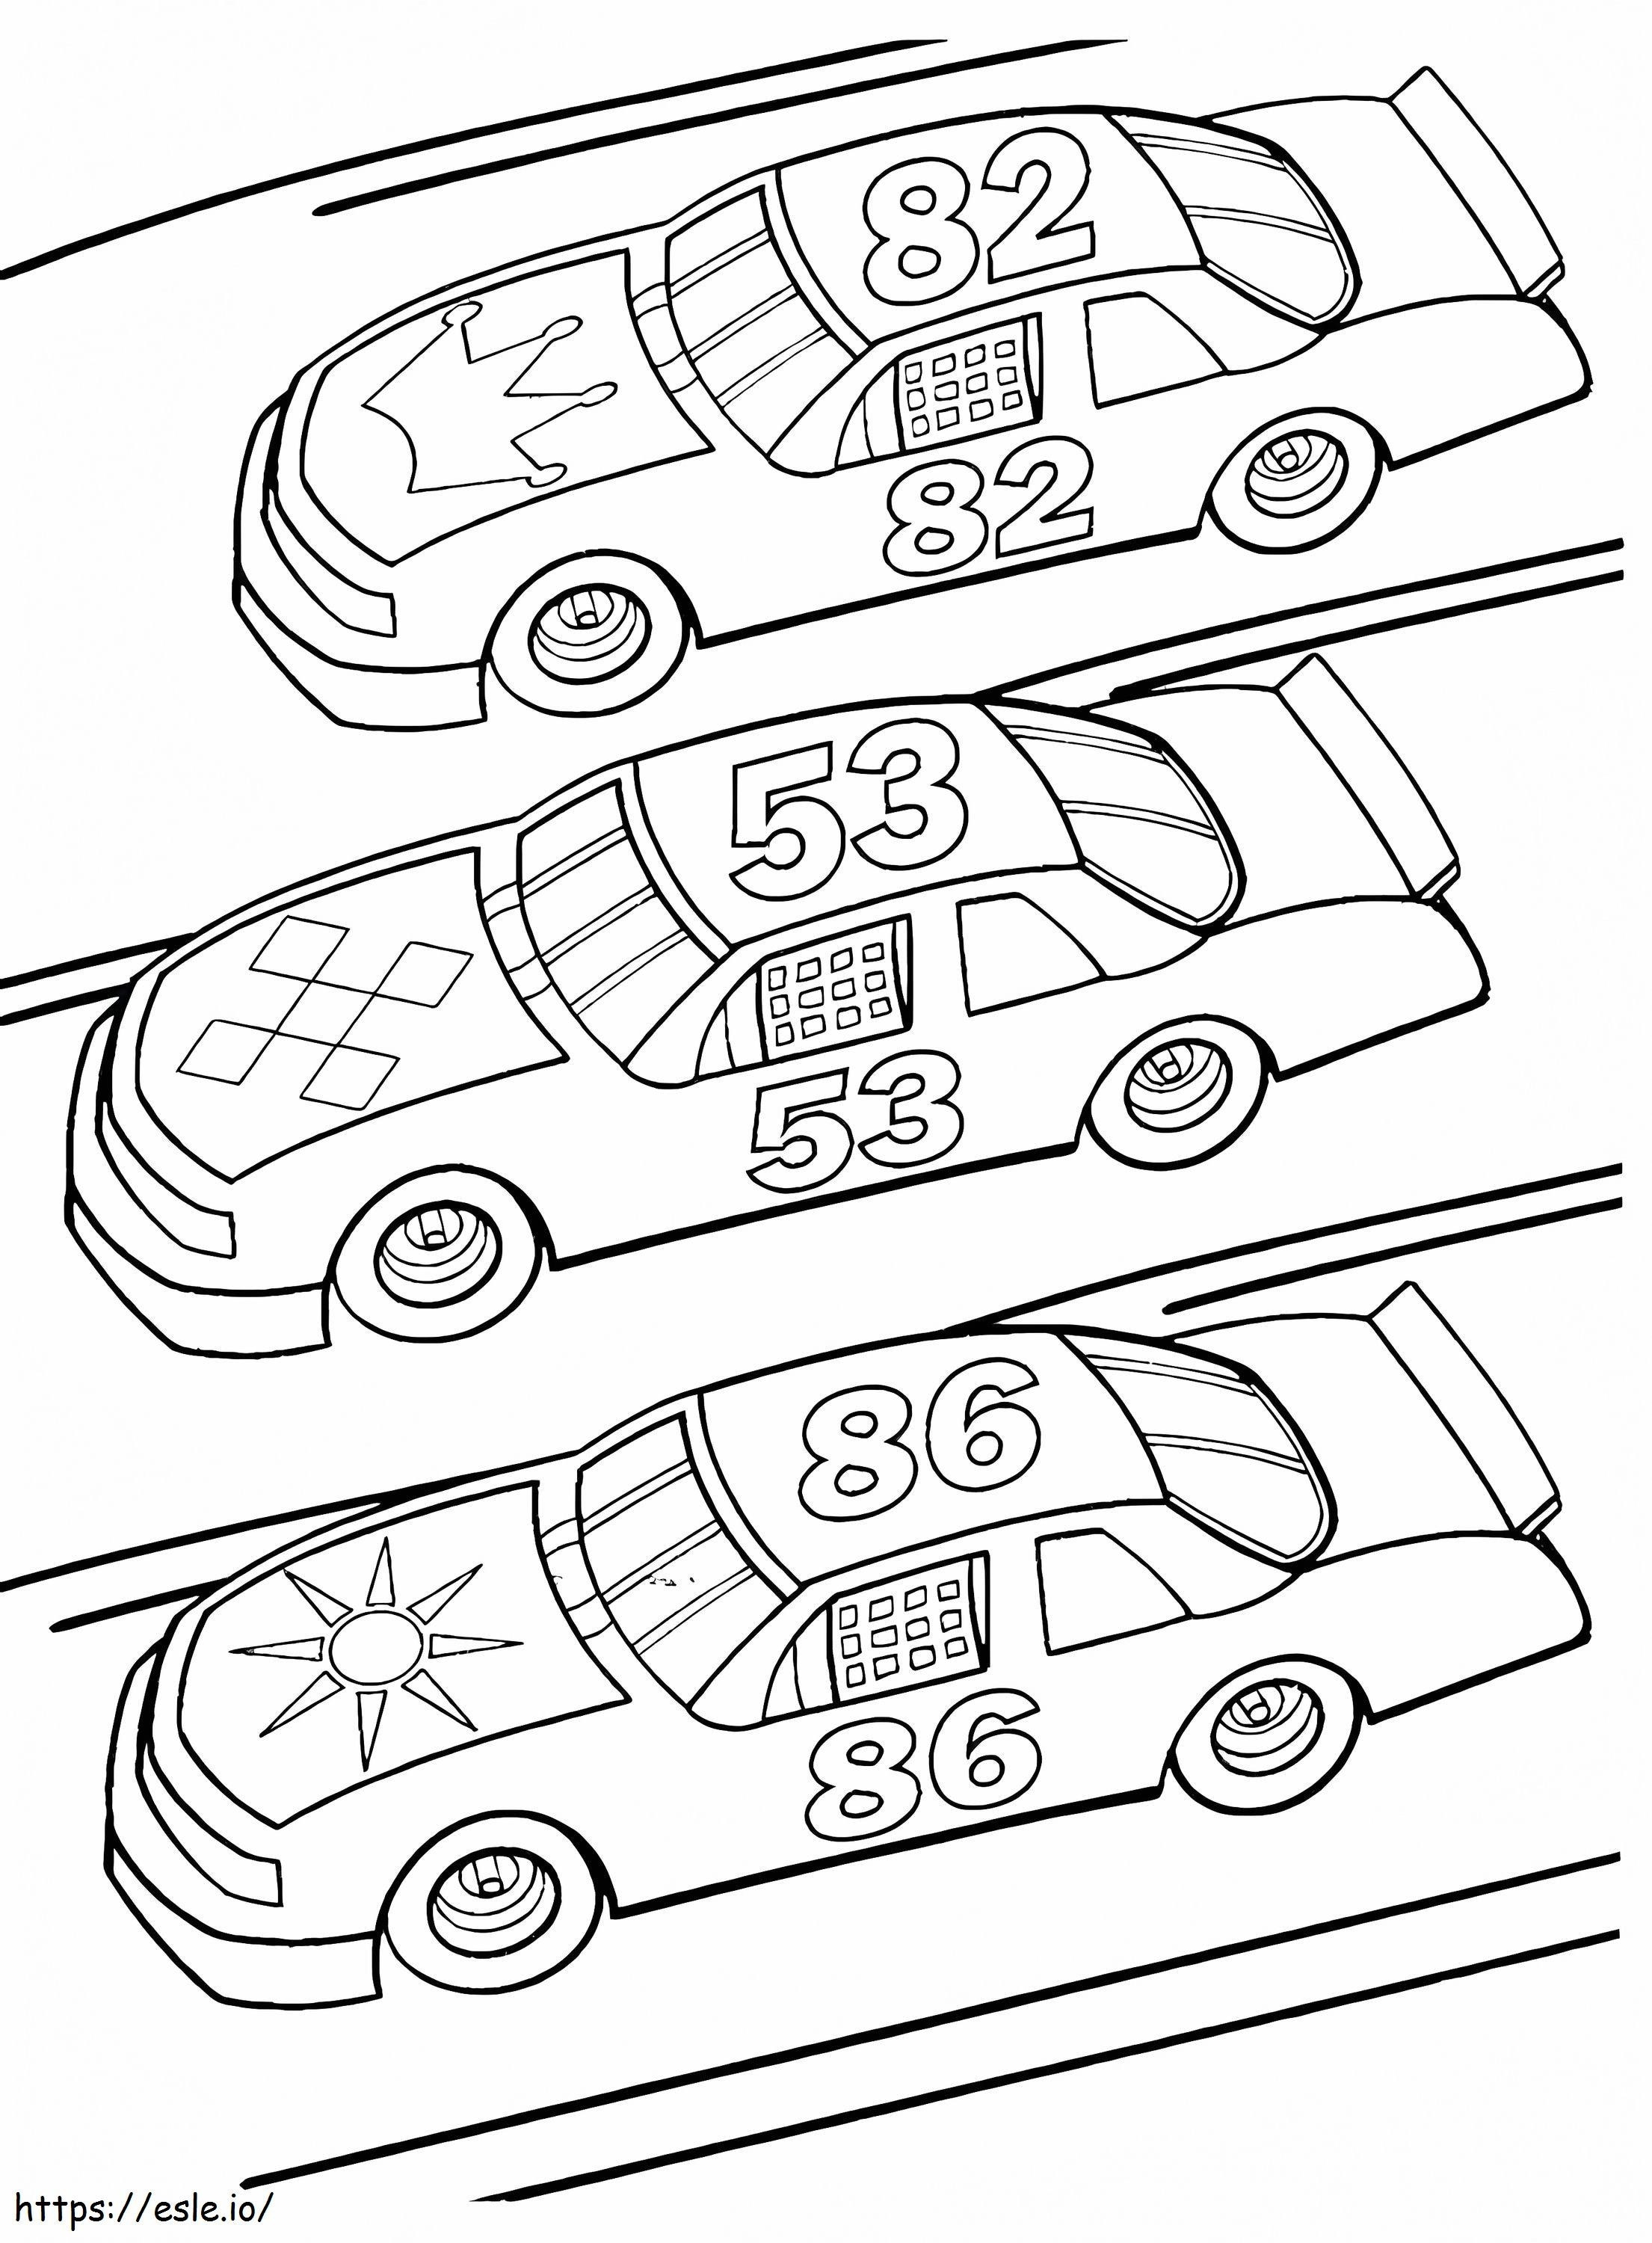 1575249314 Planse de colorat Mașini Mașini pentru copii mici Planse de colorat mașini de curse Mașini de curse pentru copii mici Mașini de poliție Planșe de colorat mașini pentru adulți de colorat